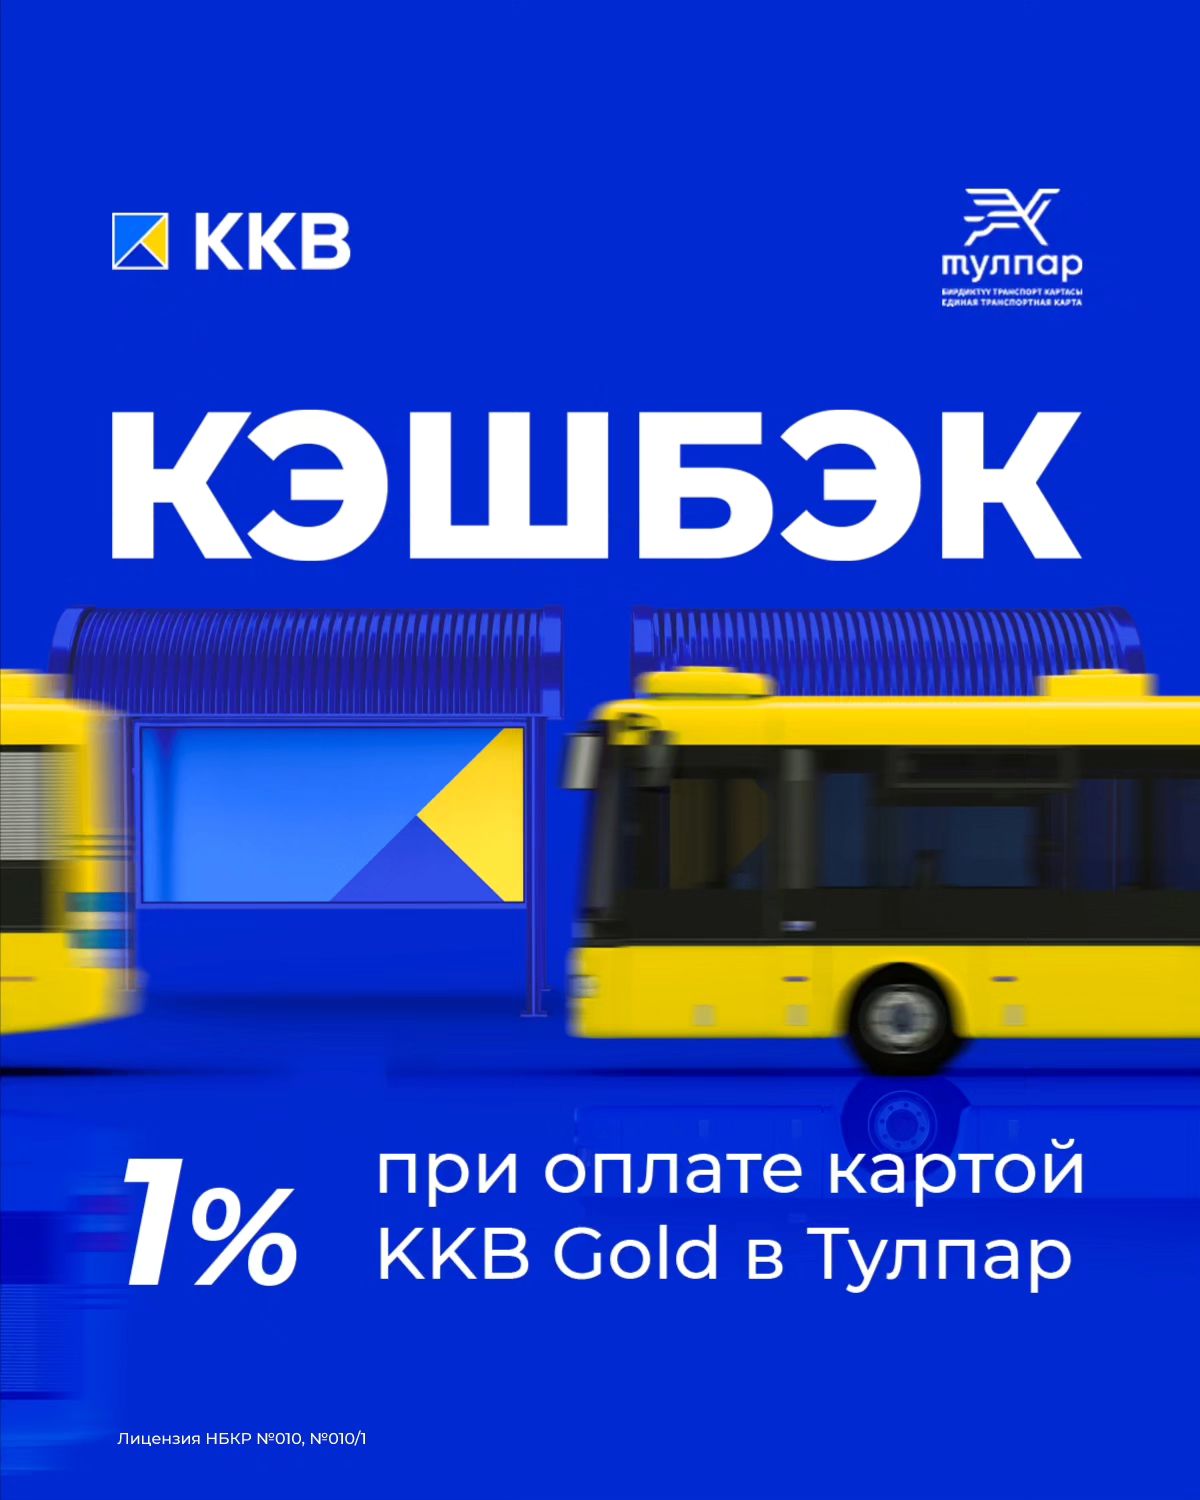 Оплачивайте поездки картами KKB Gold и получайте кэшбэк 1%